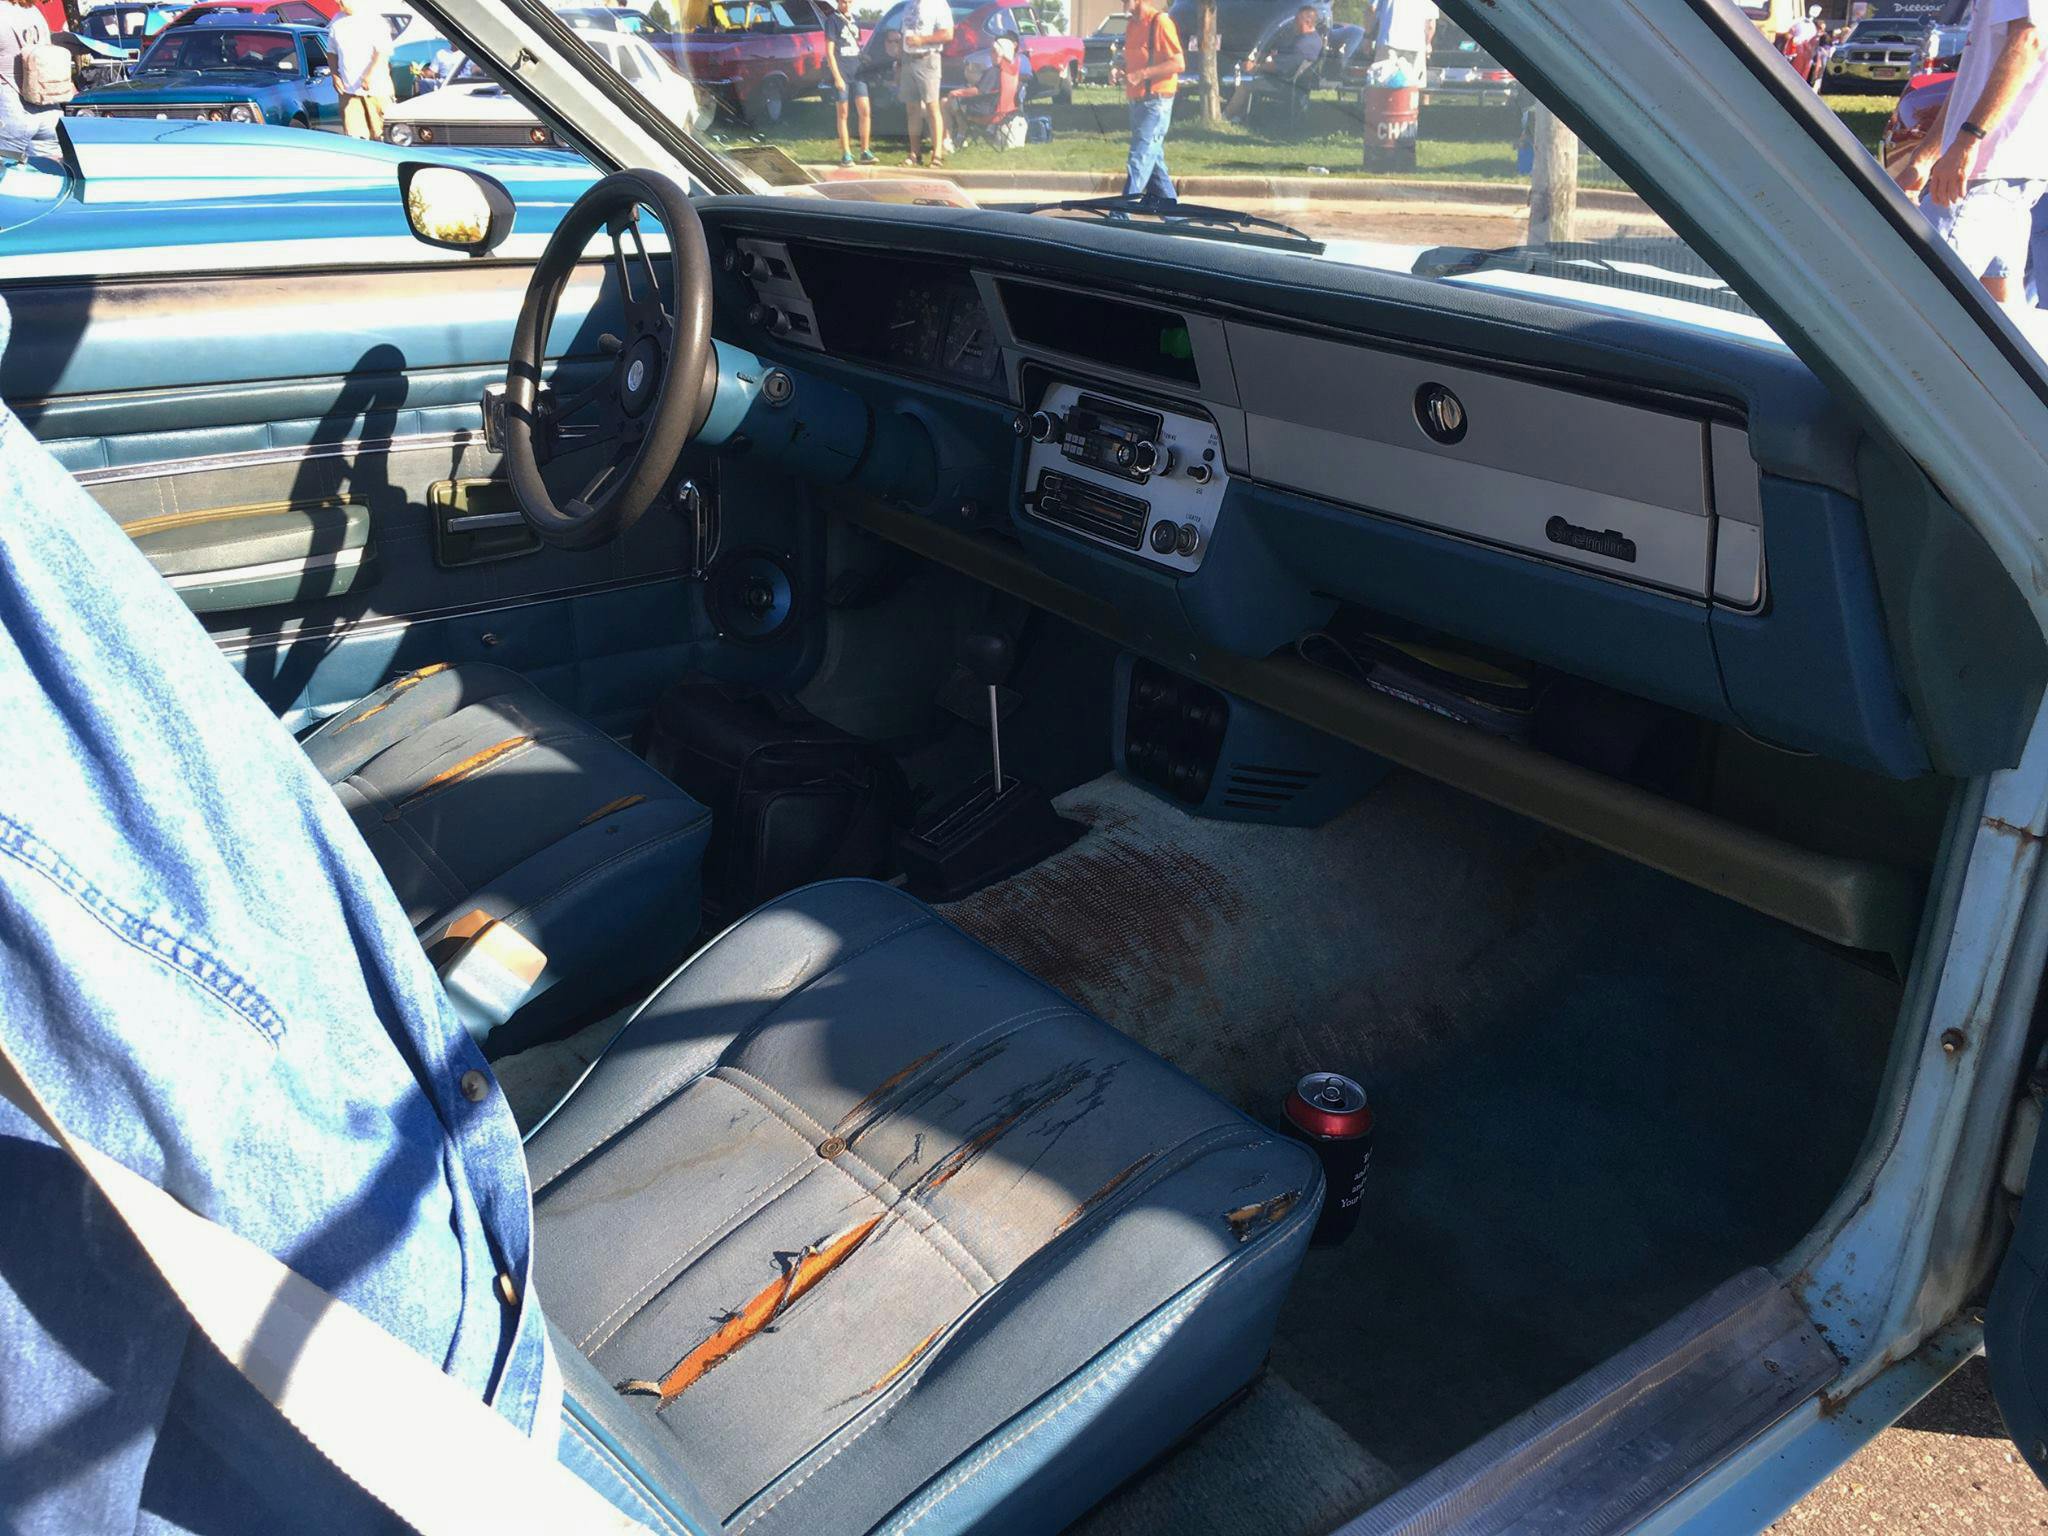 AMC Levis Gremlin interior worn